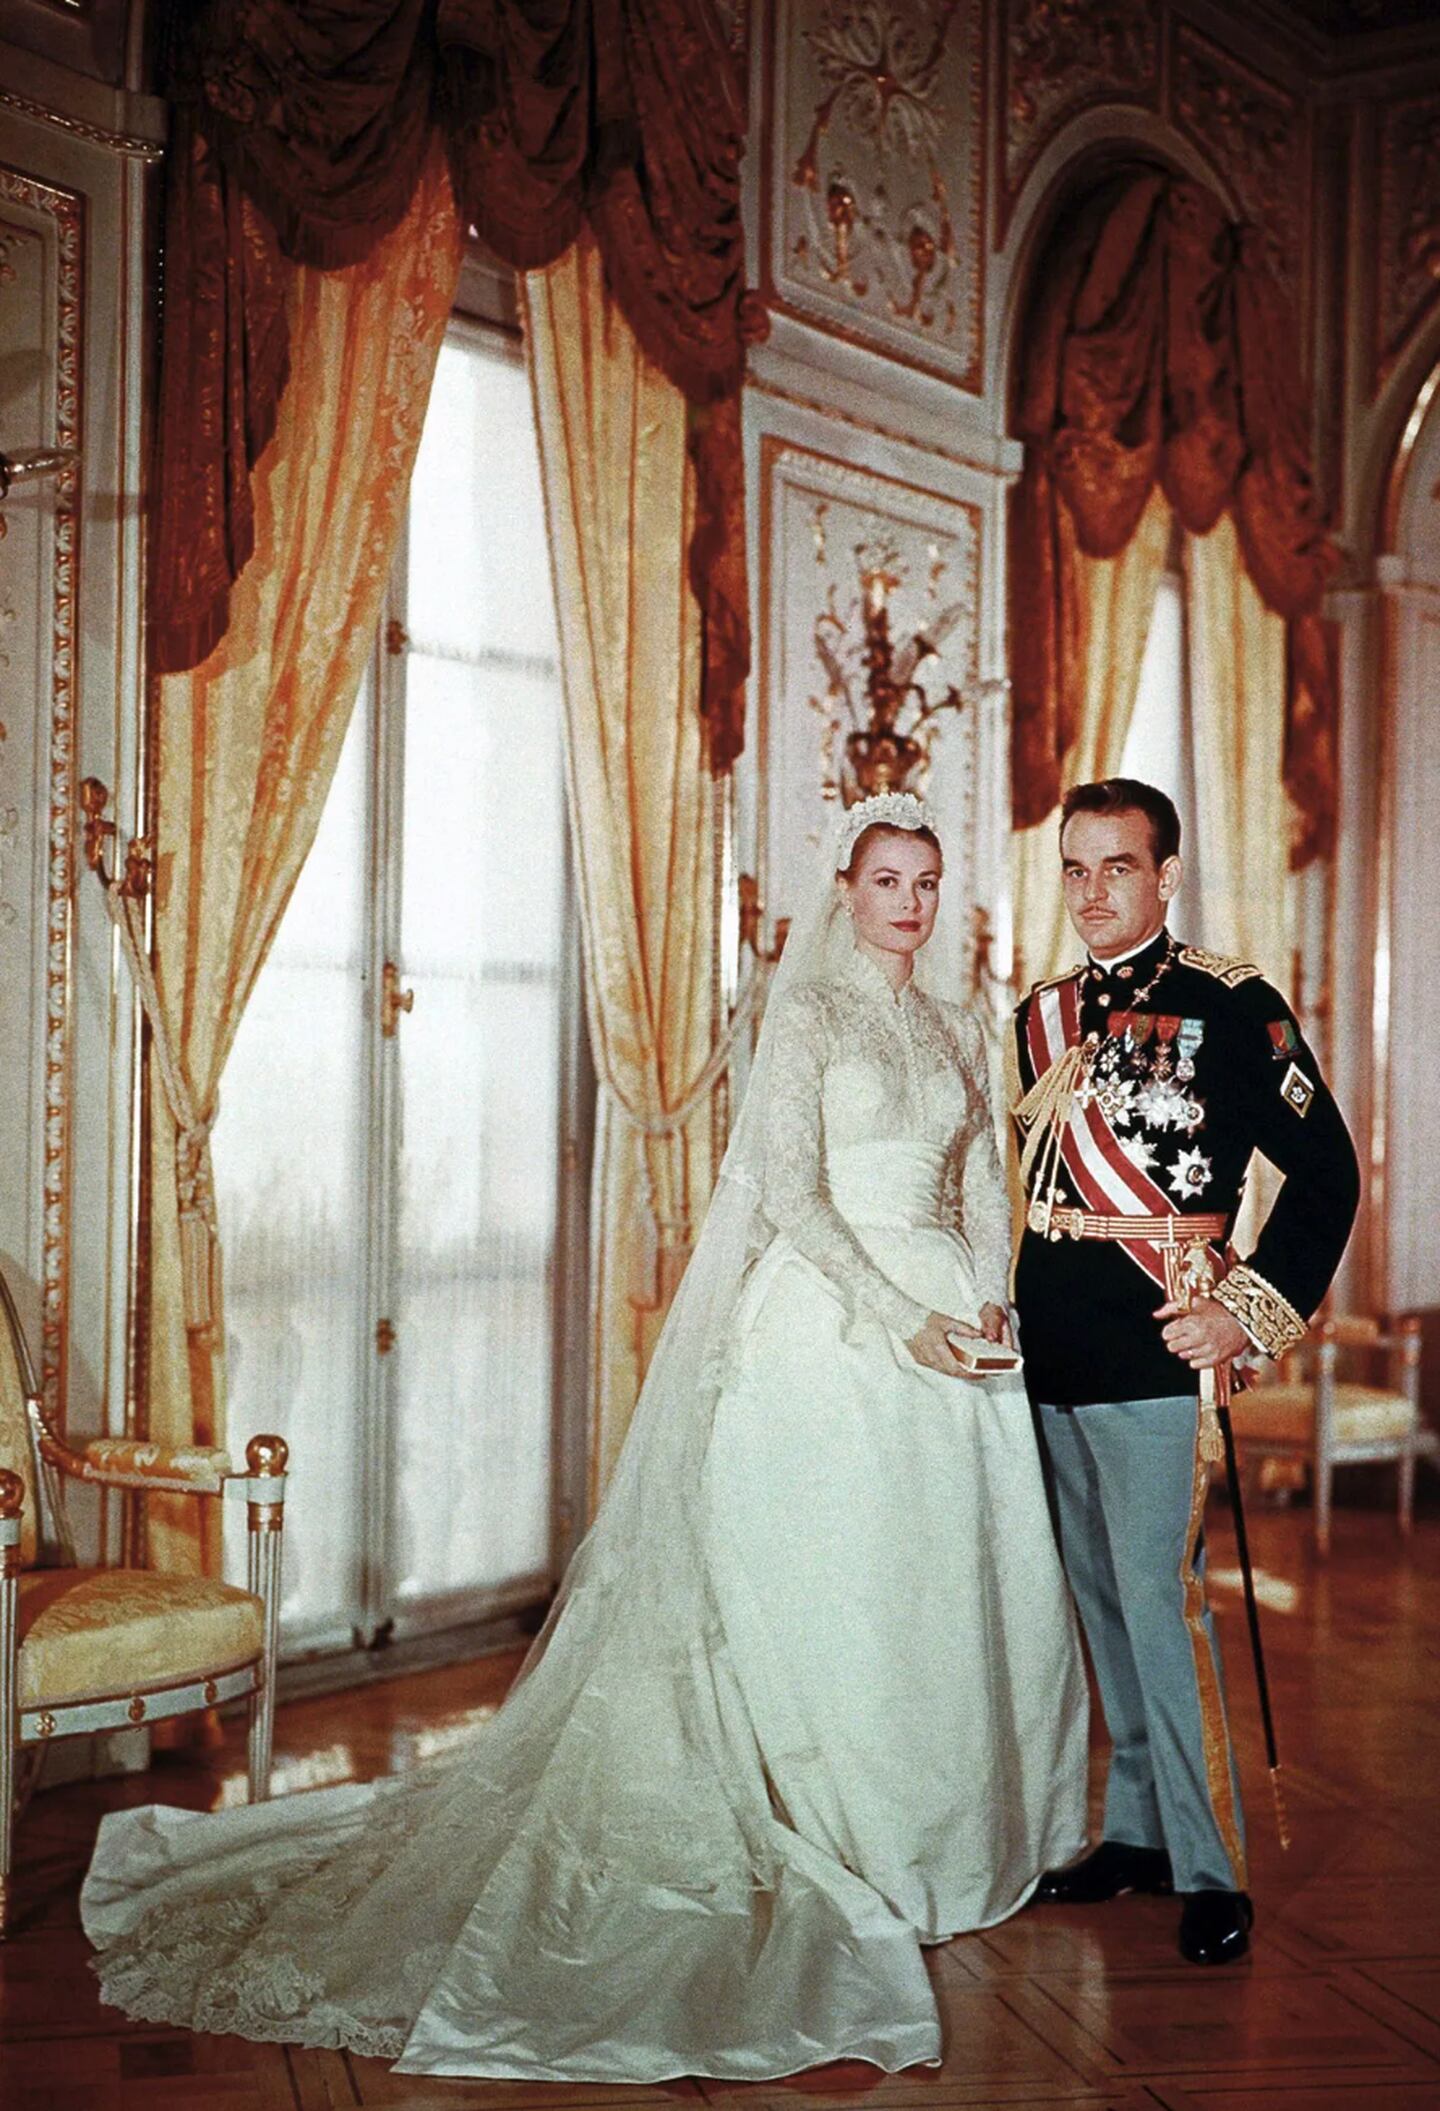 La boda de cuento de hadas de Grace Kelly y el príncipe Rainiero III